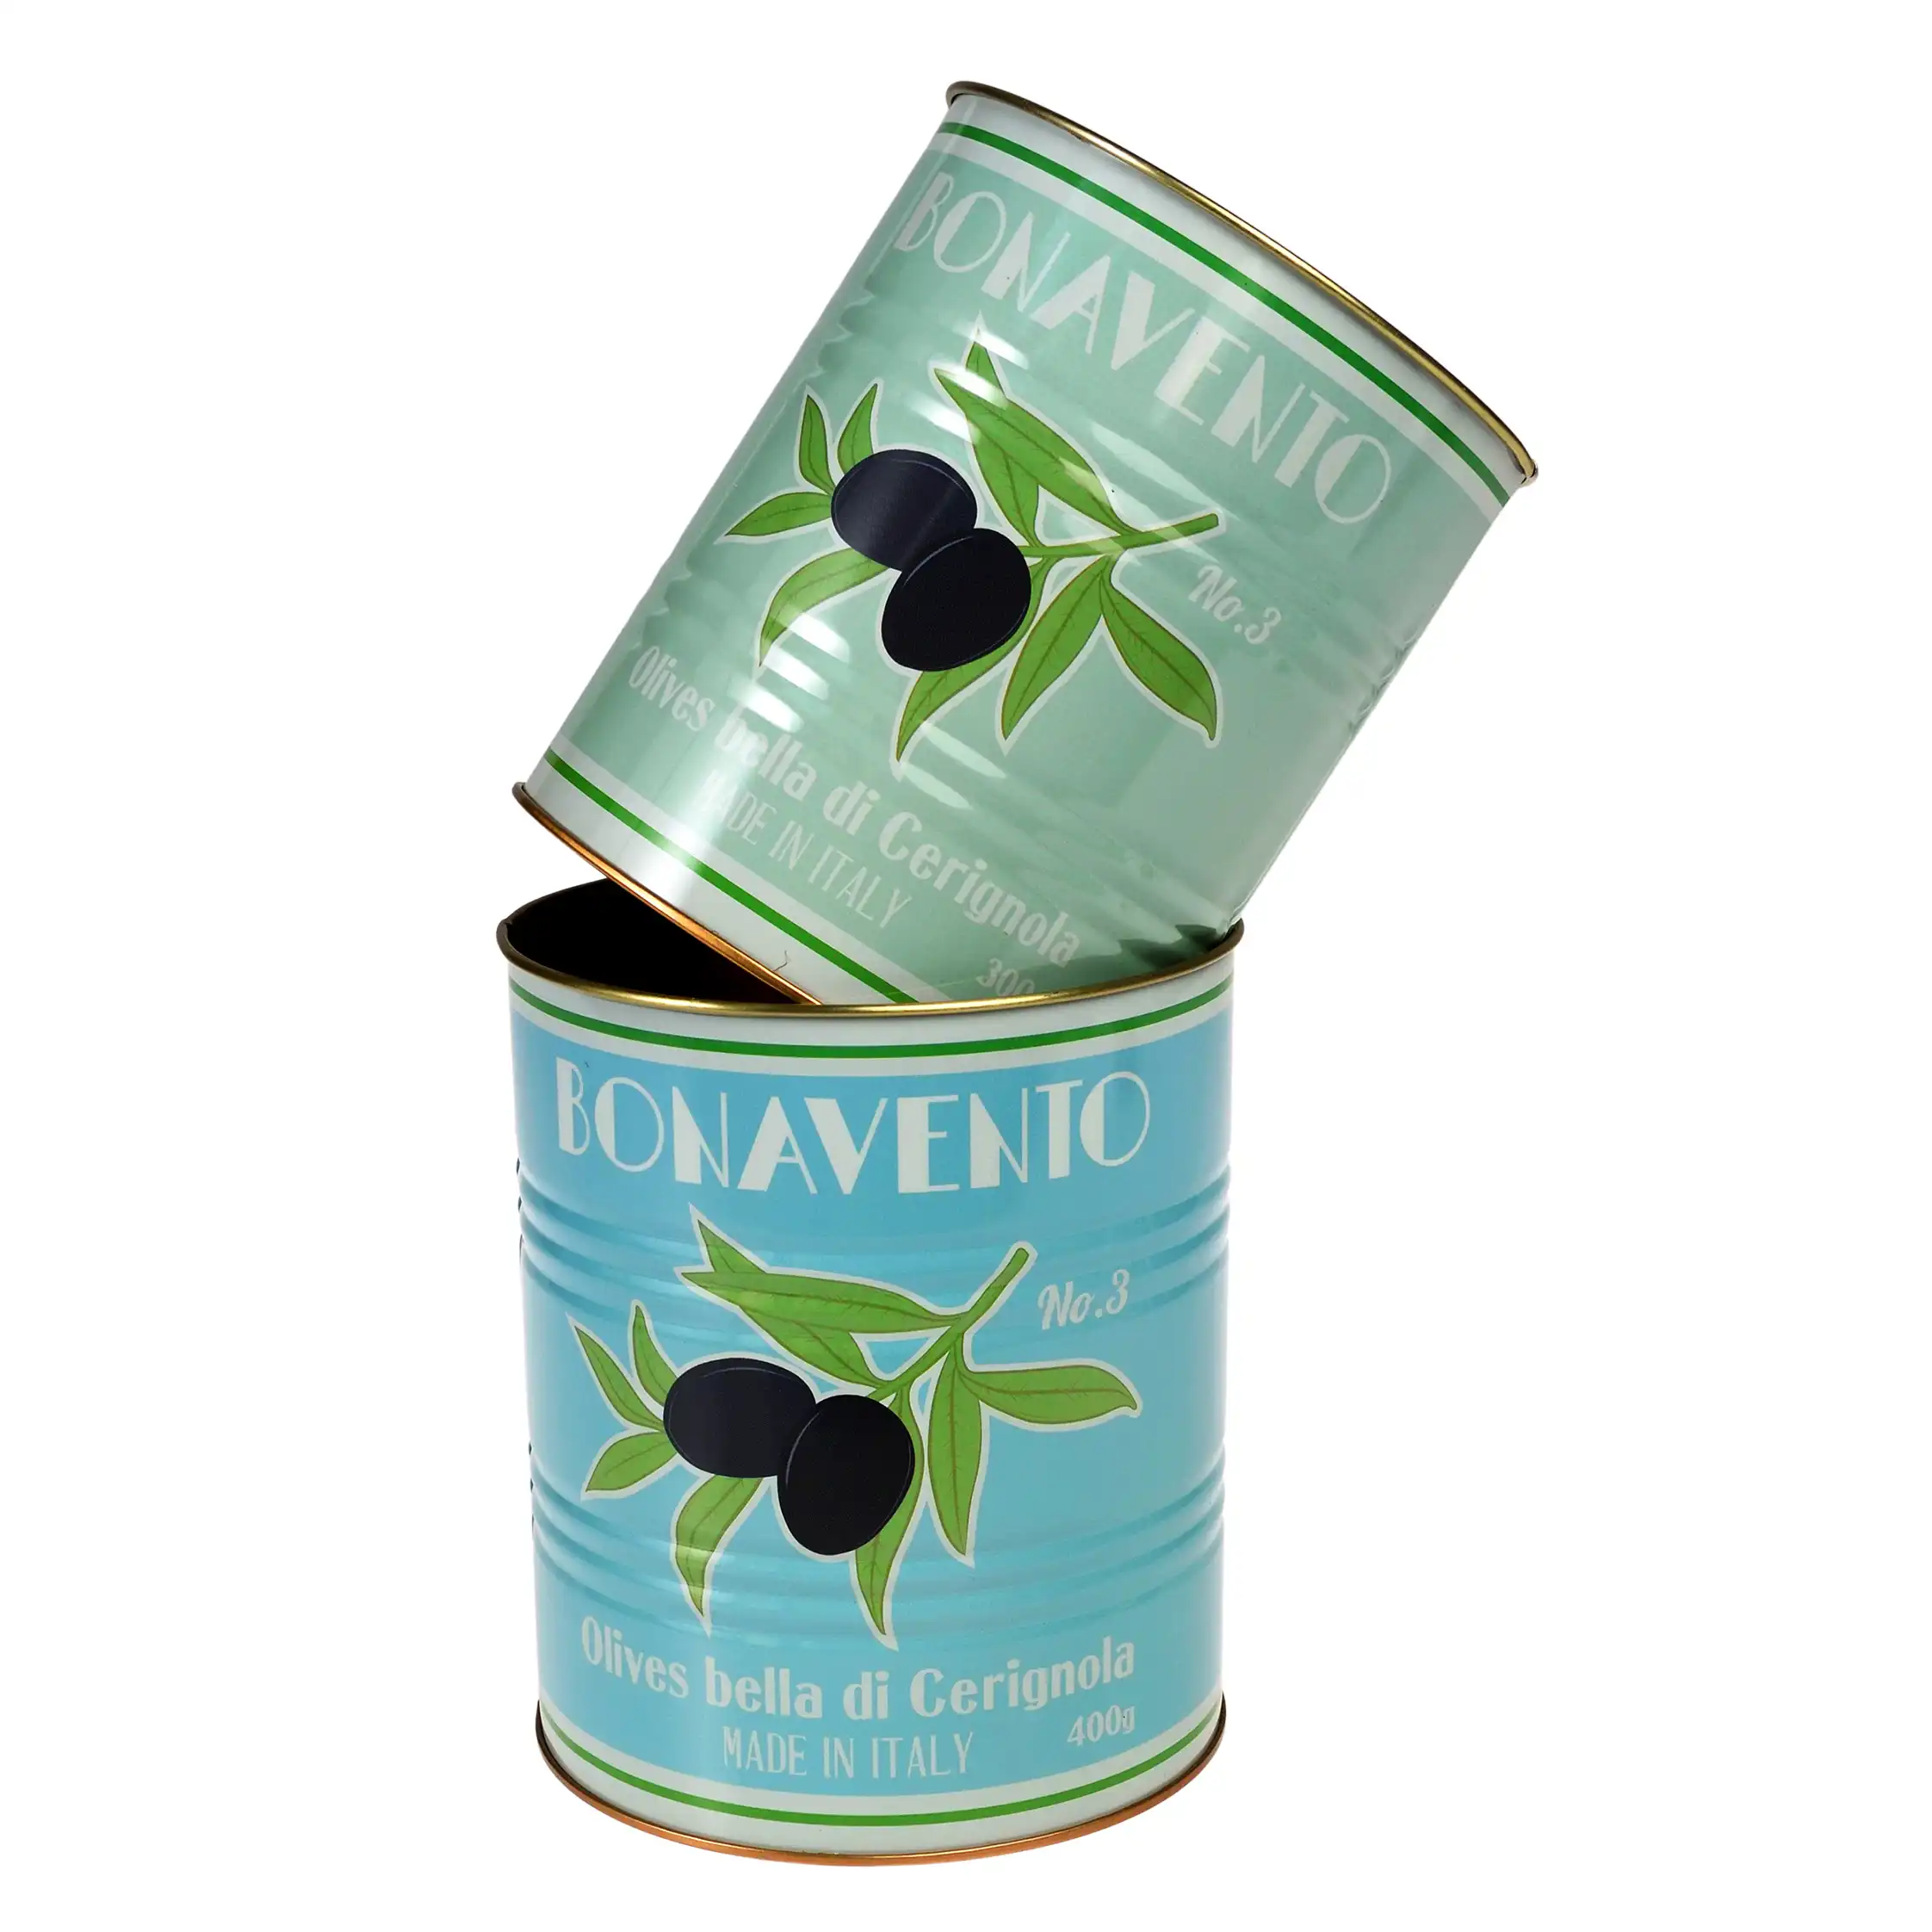 storage tins (set of 2) - bonavento